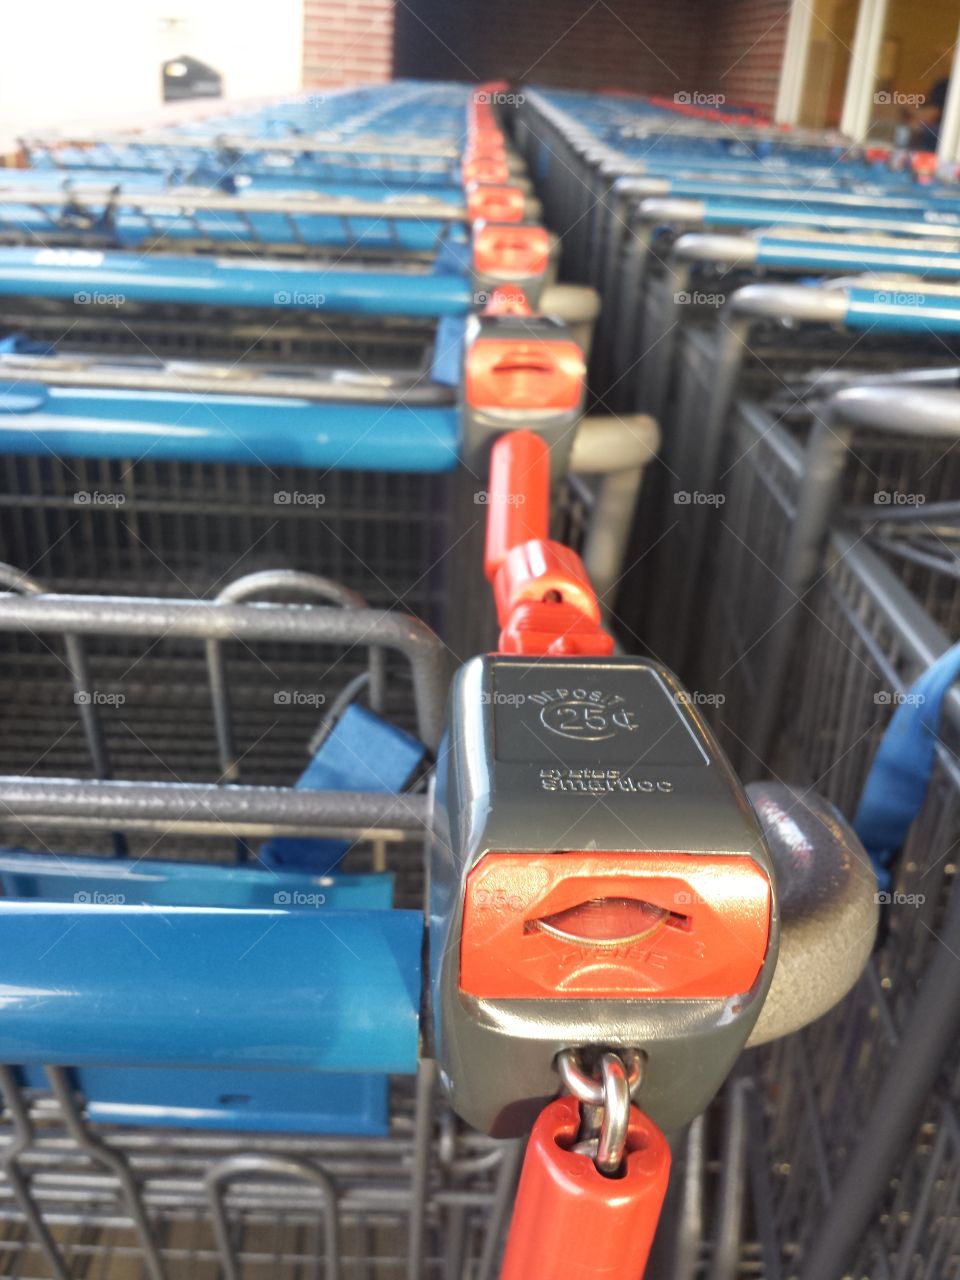 Aldi's Shopping Carts